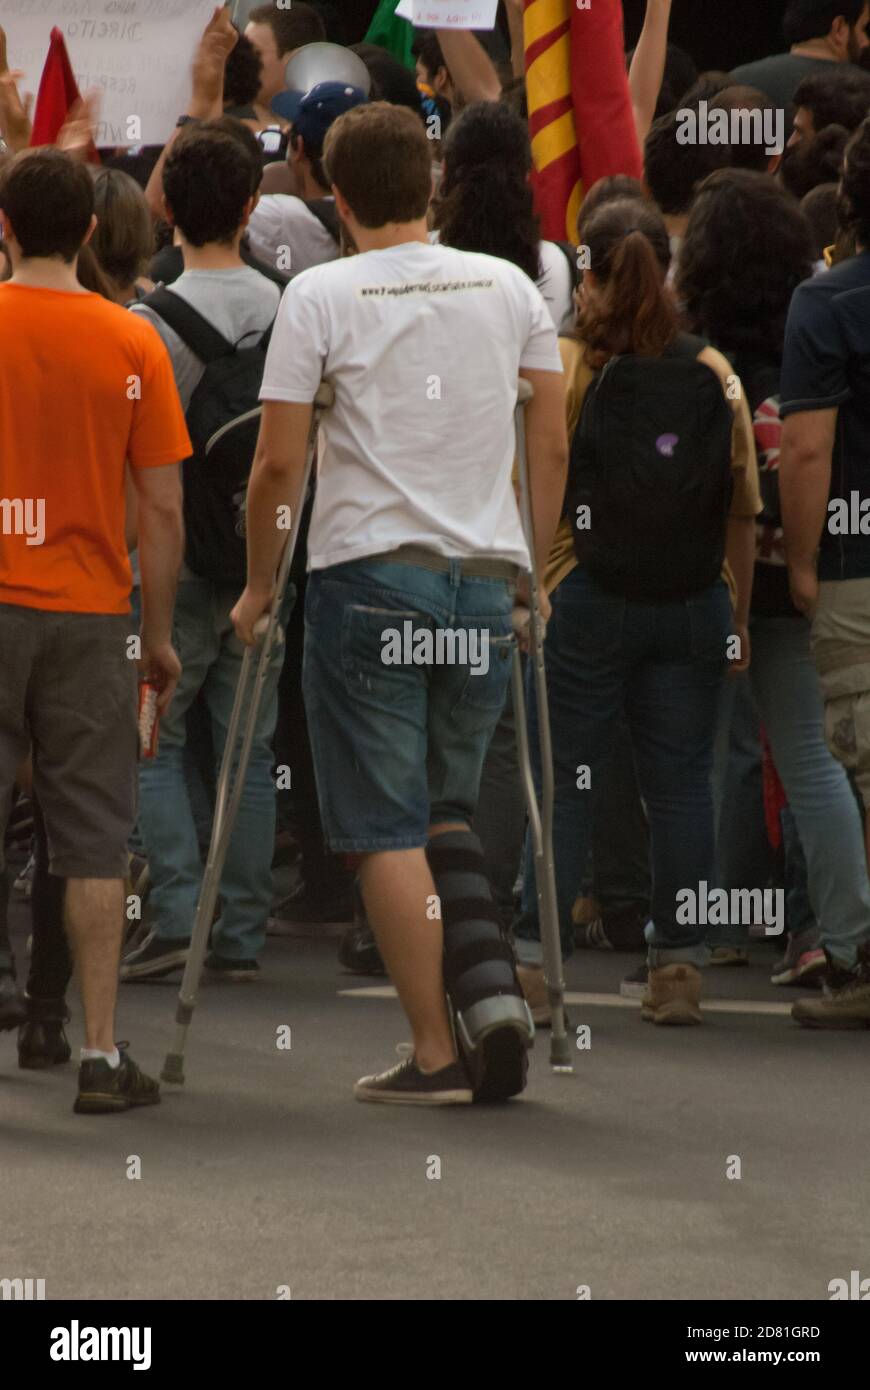 Personne handicapée dans la manifestation exigeant plus de droits à Belo Horizonte, Brésil Banque D'Images